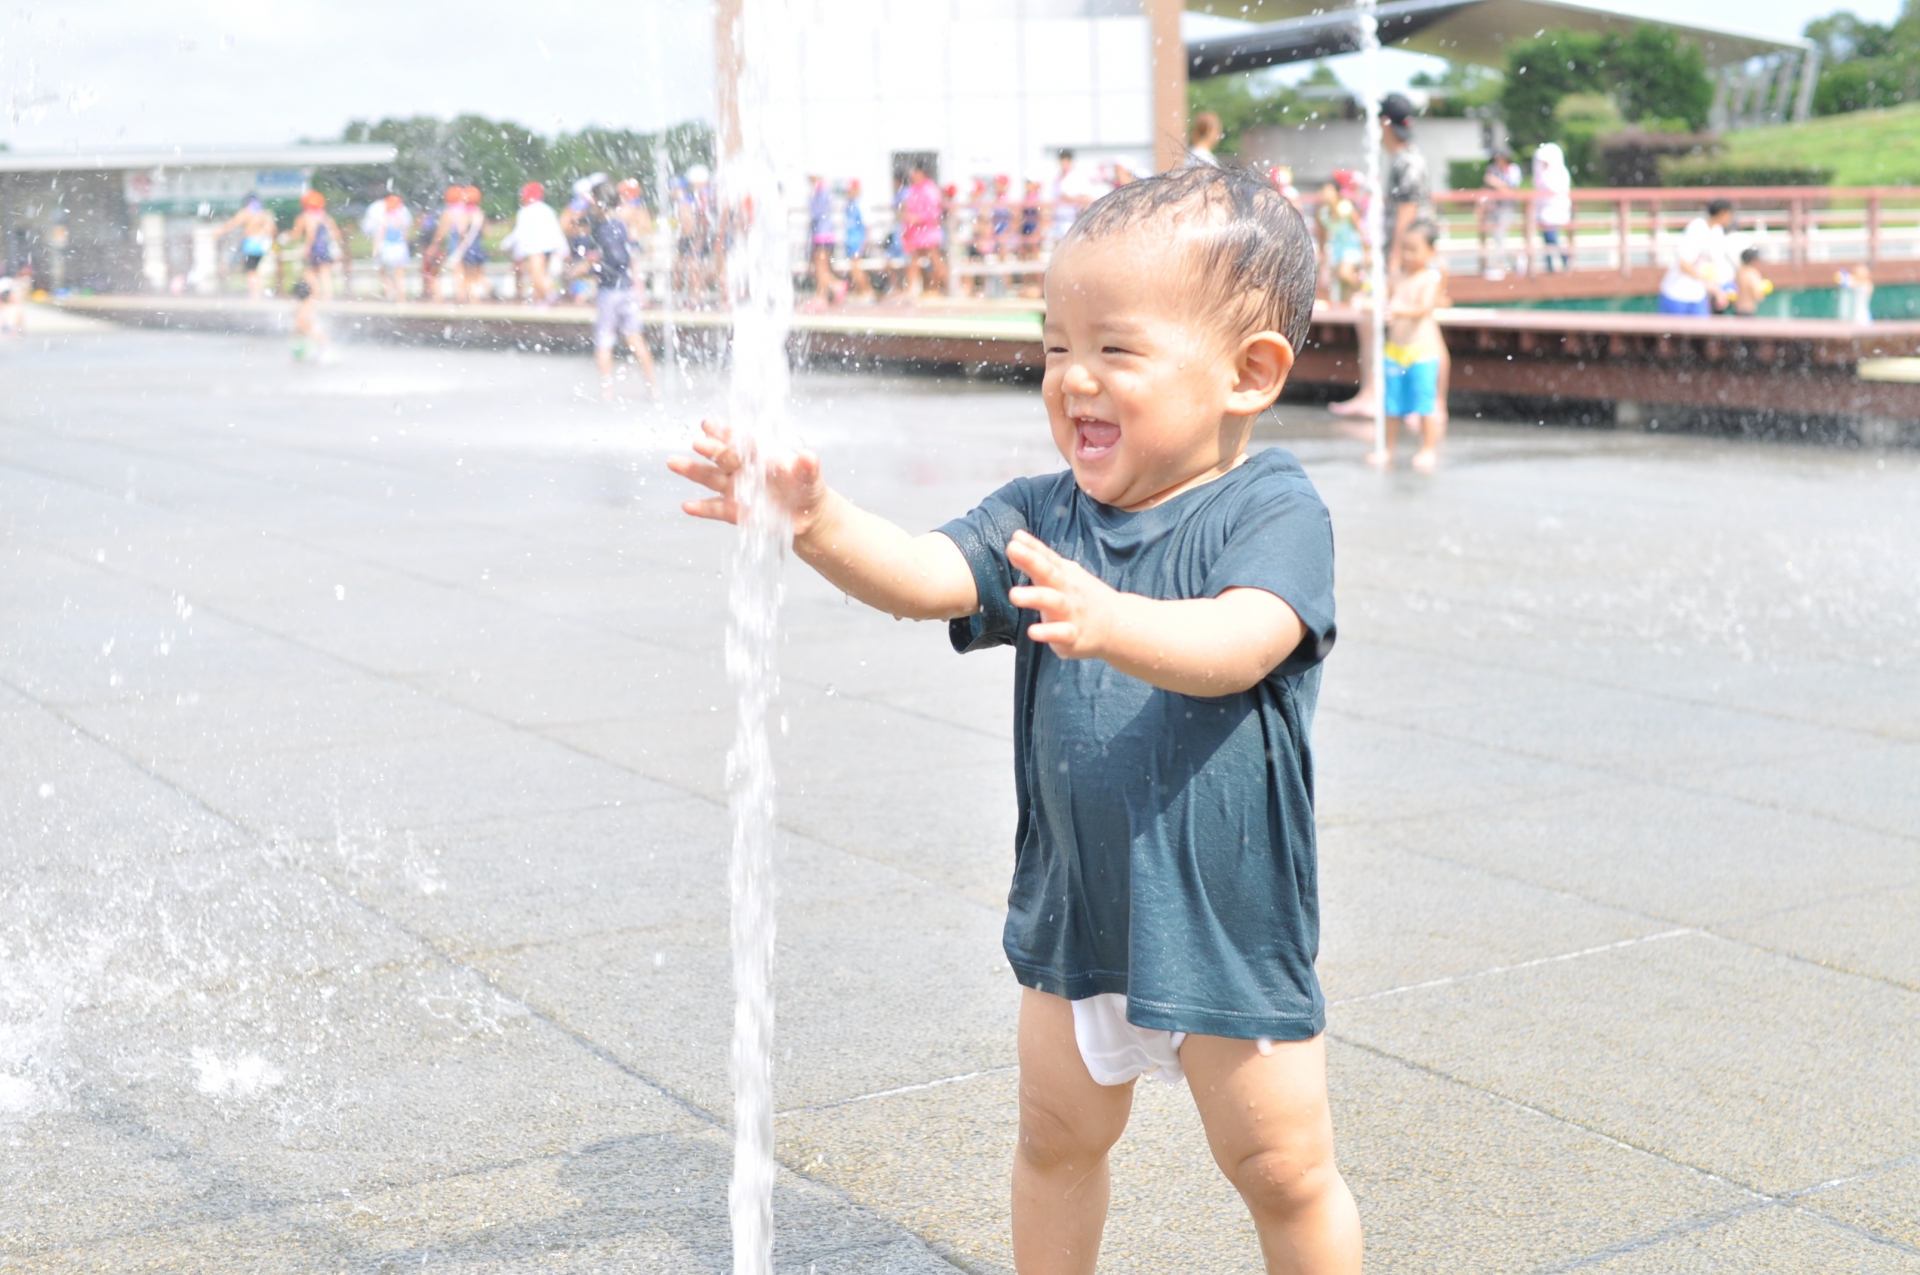 国分寺で水遊びができるおすすめ公園情報5スポット プール 無料施設 東京イベントプラス 親子で楽しいお得な週末お出かけ情報